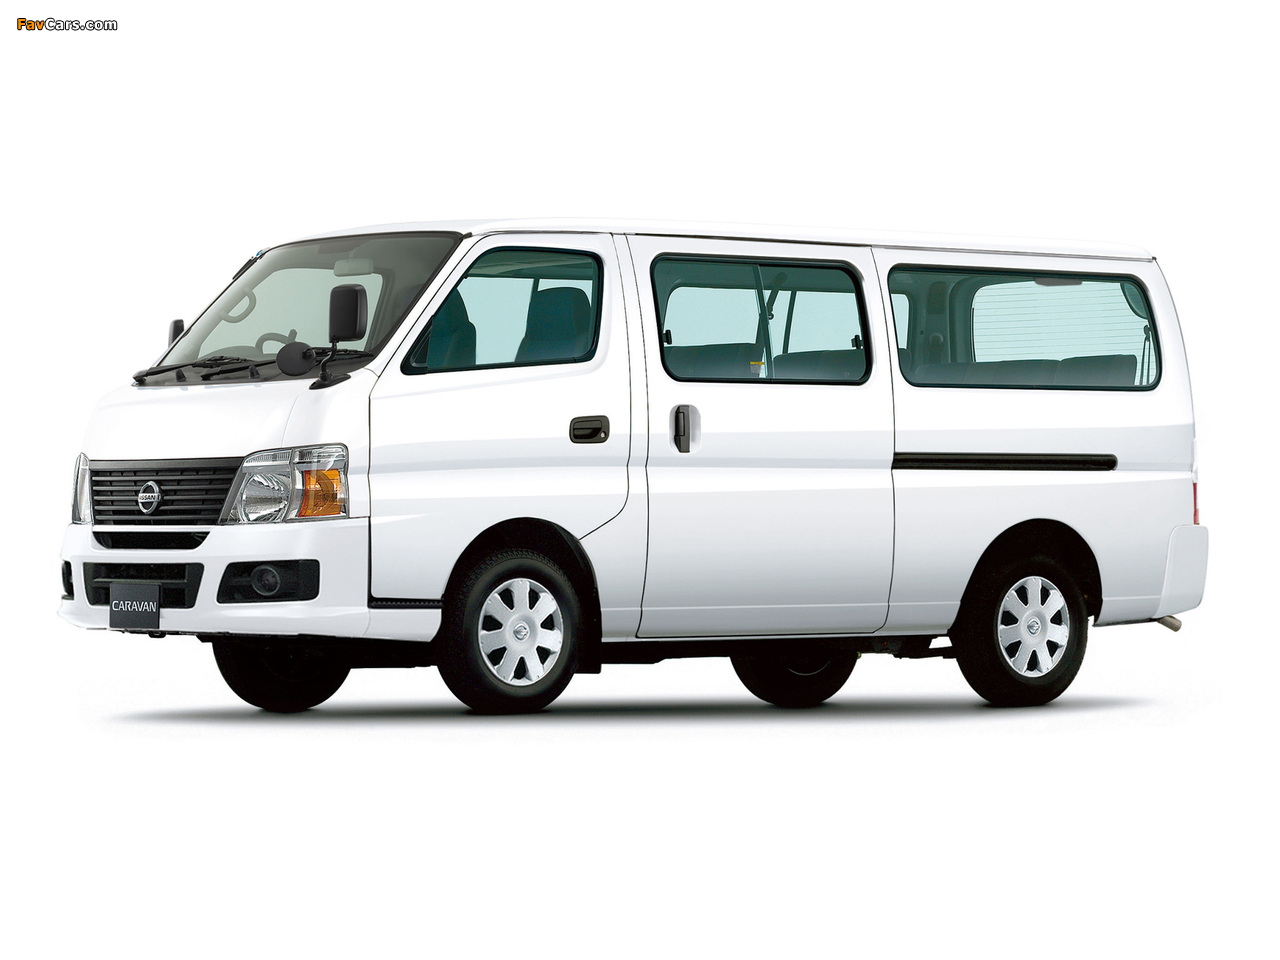 Nissan Caravan LWB (E25) 2005 images (1280 x 960)